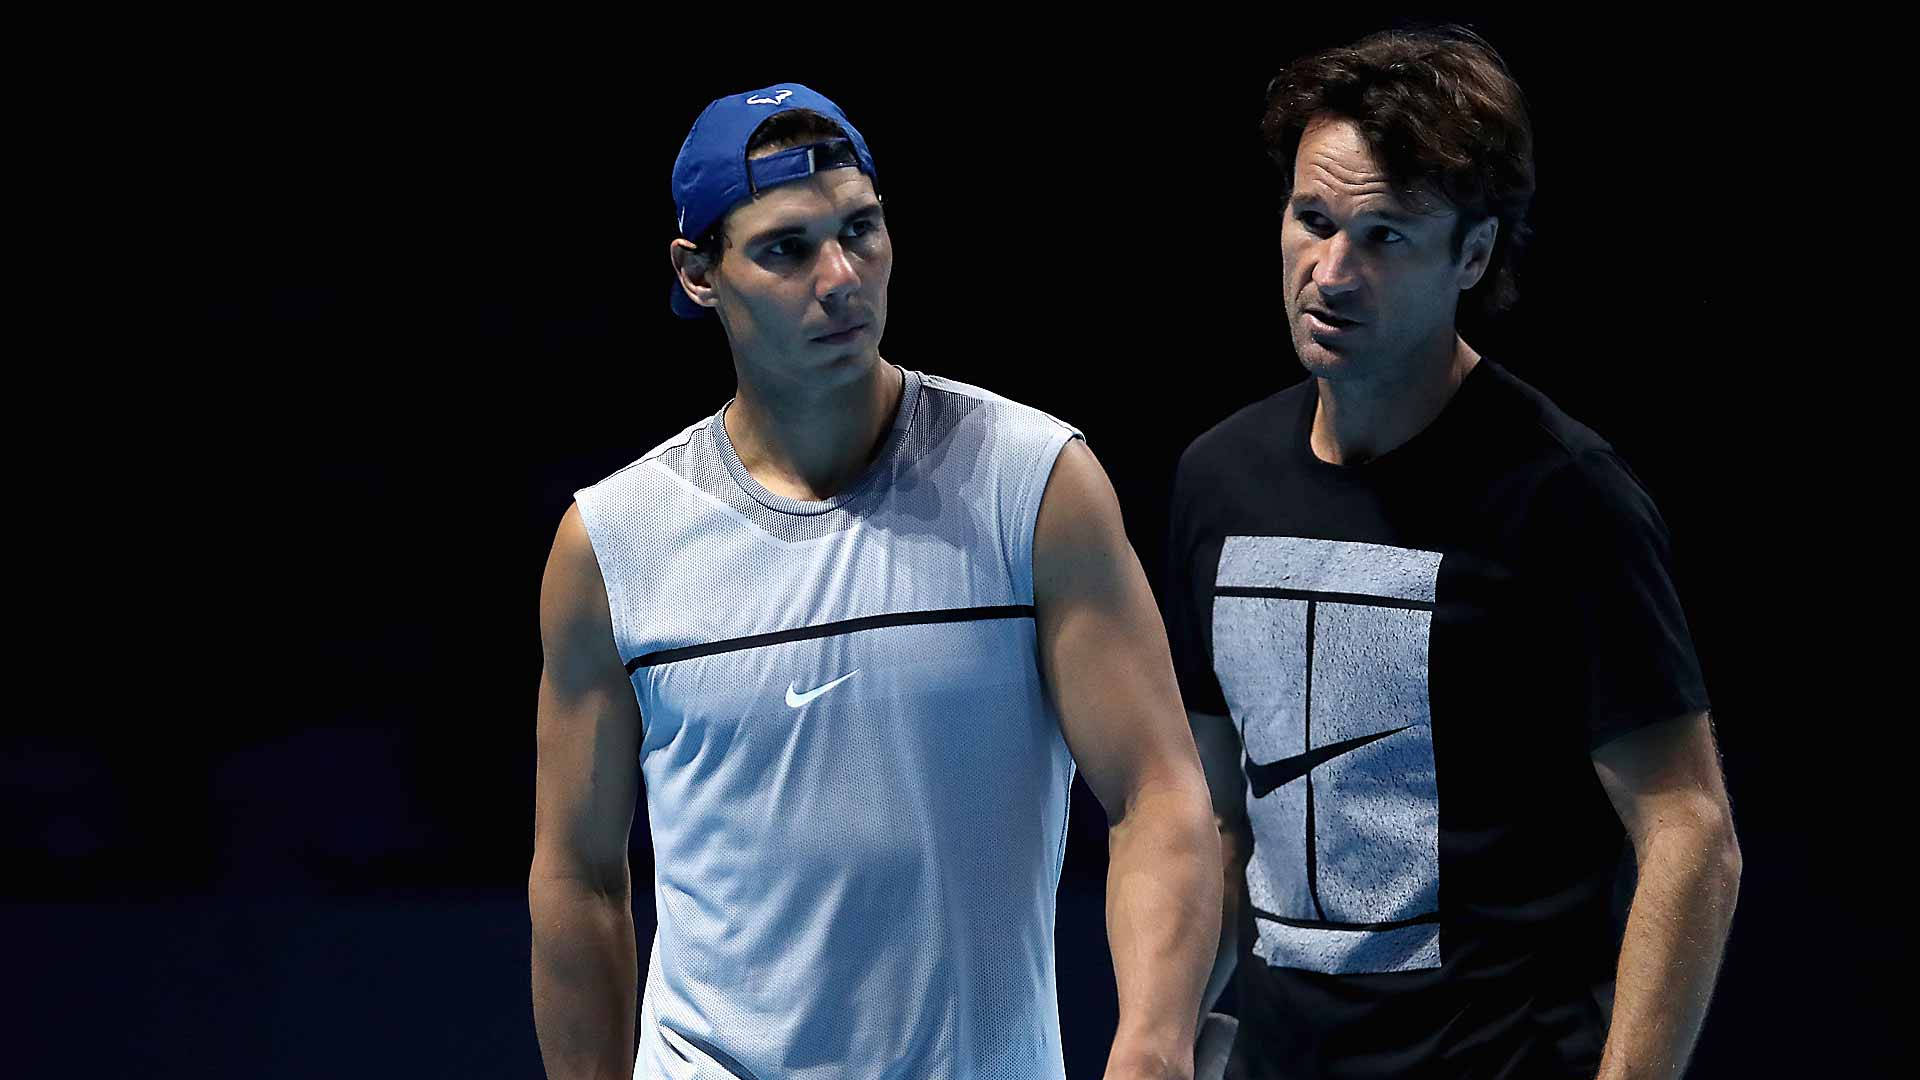 Carlos Moya og Rafael Nadal side om side på tennisbanen tapet Wallpaper